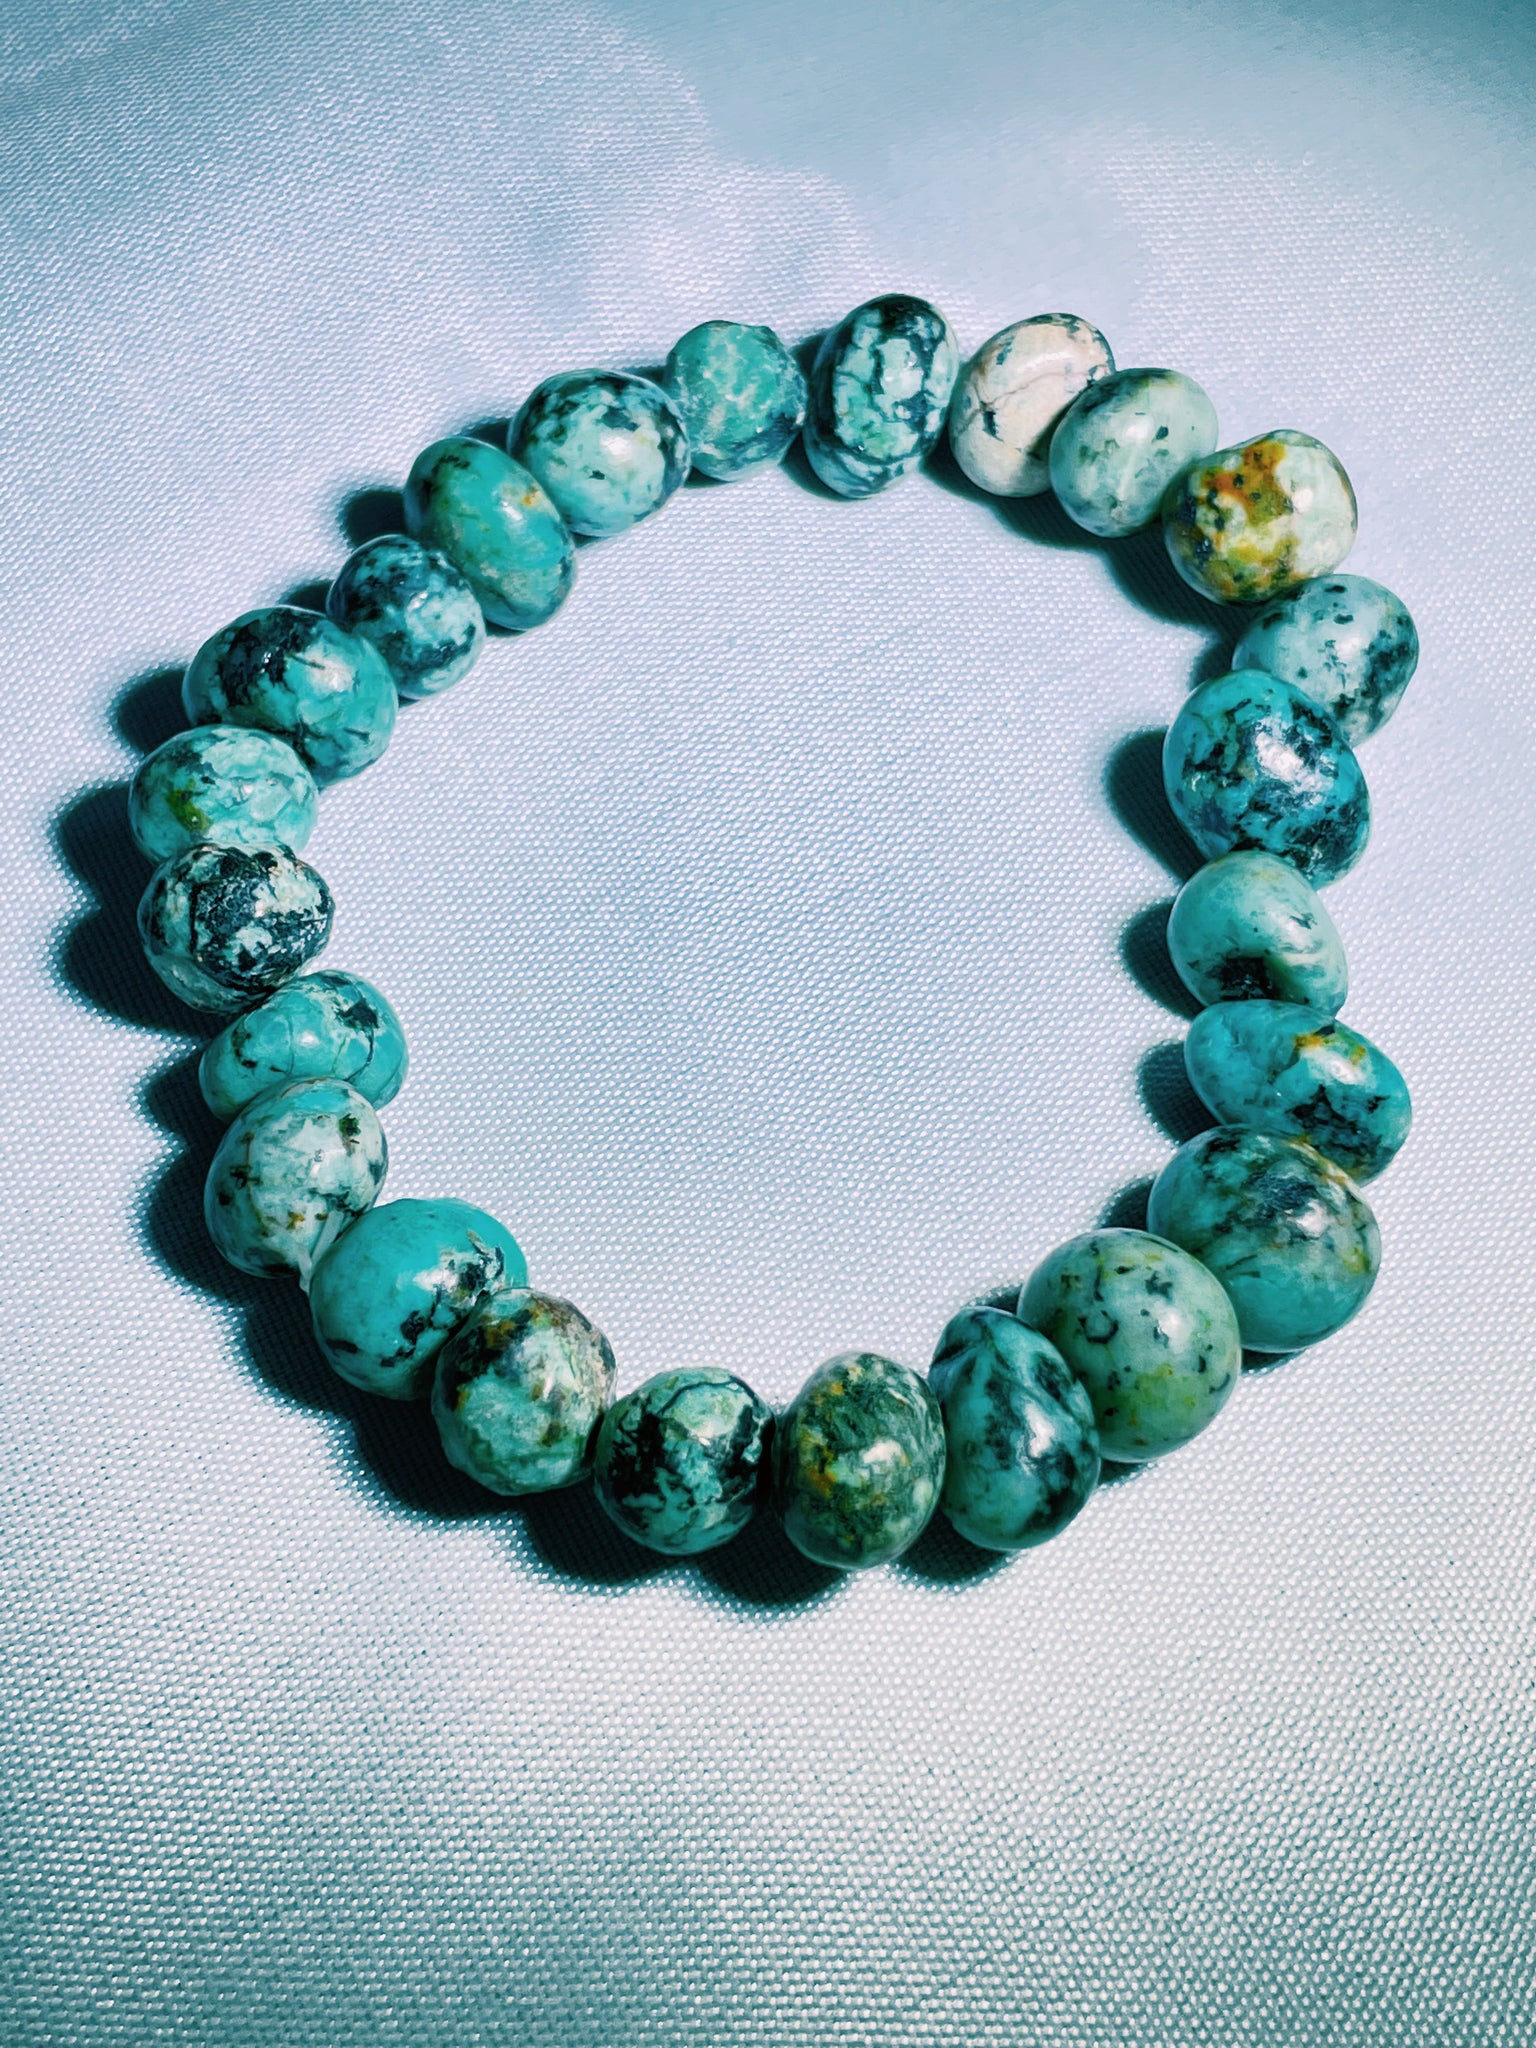 Tibet Turquoise Bracelet